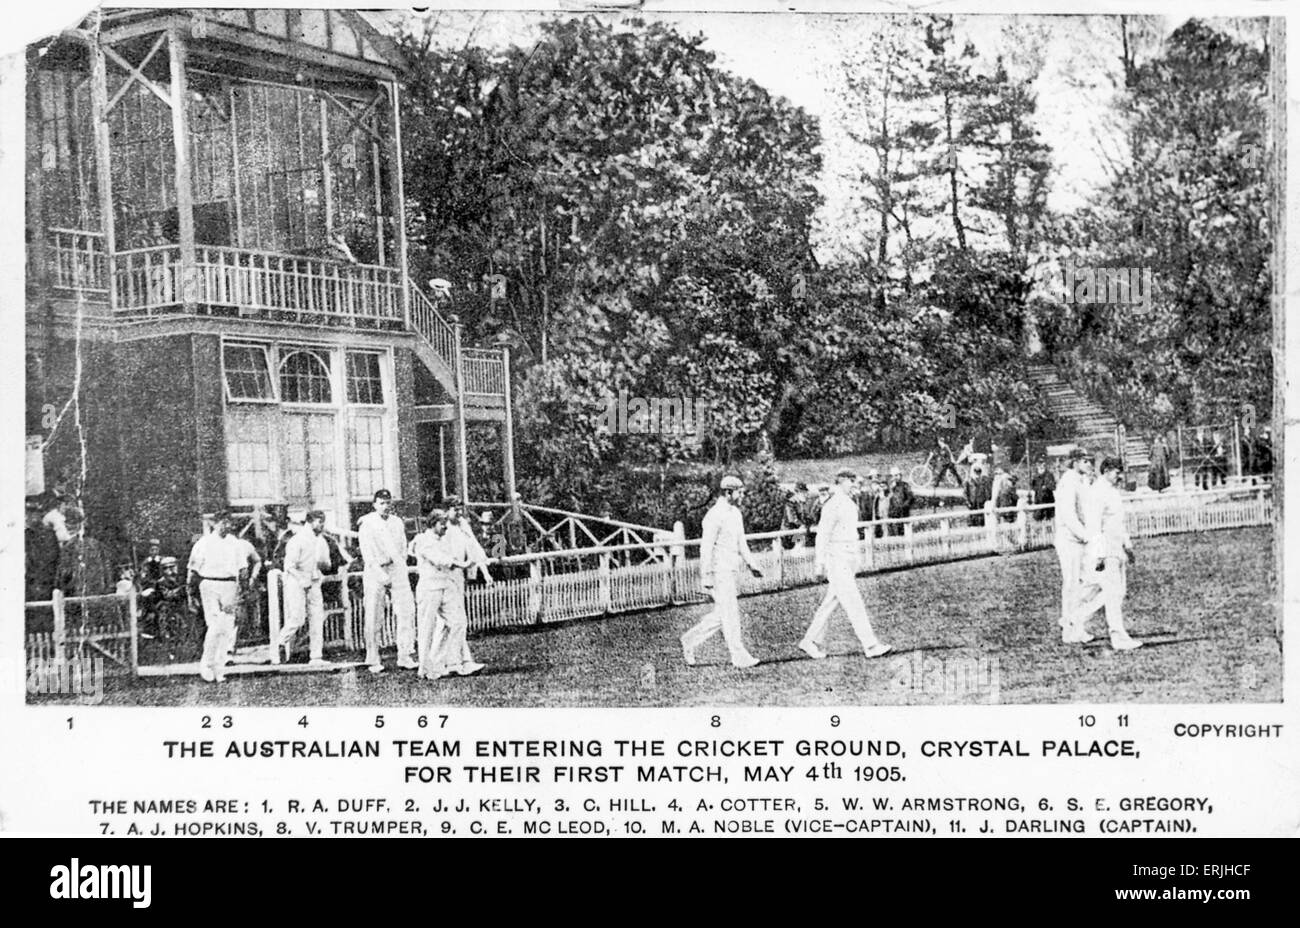 Tour Australiano della Gran Bretagna per la cenere. Colleghi di Inghilterra v Australia corrisponde al Crystal Palace, in Australia la prima partita del loro tour. La squadra australiana entra nel campo, 4 maggio 1905. Foto Stock